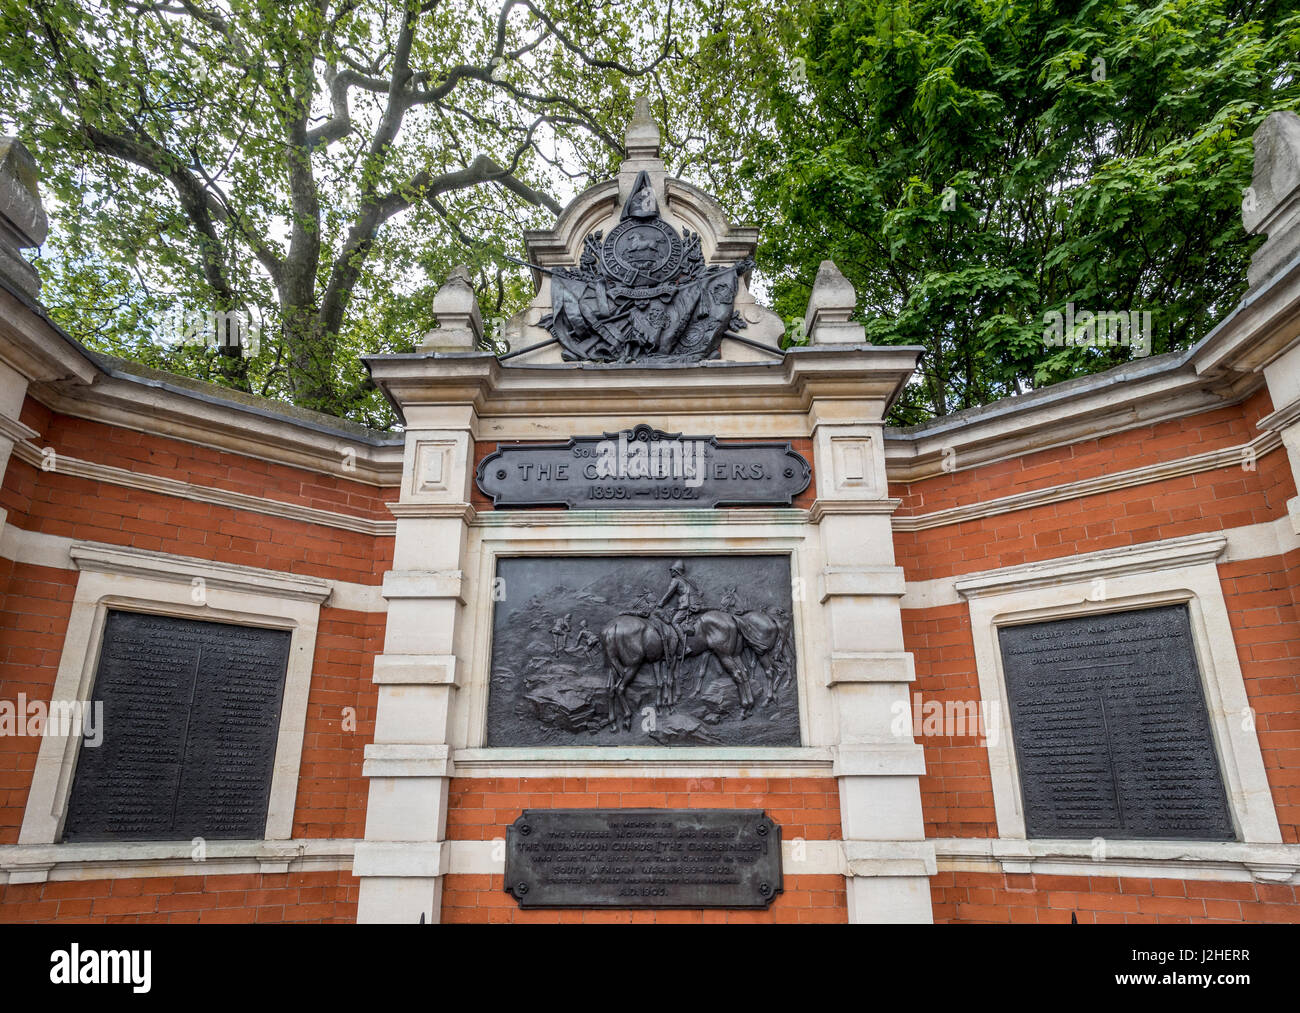 The 6th Dragoon Guards (Carabiniers) memorial, Chelsea Bridge Road, London, UK. Stock Photo